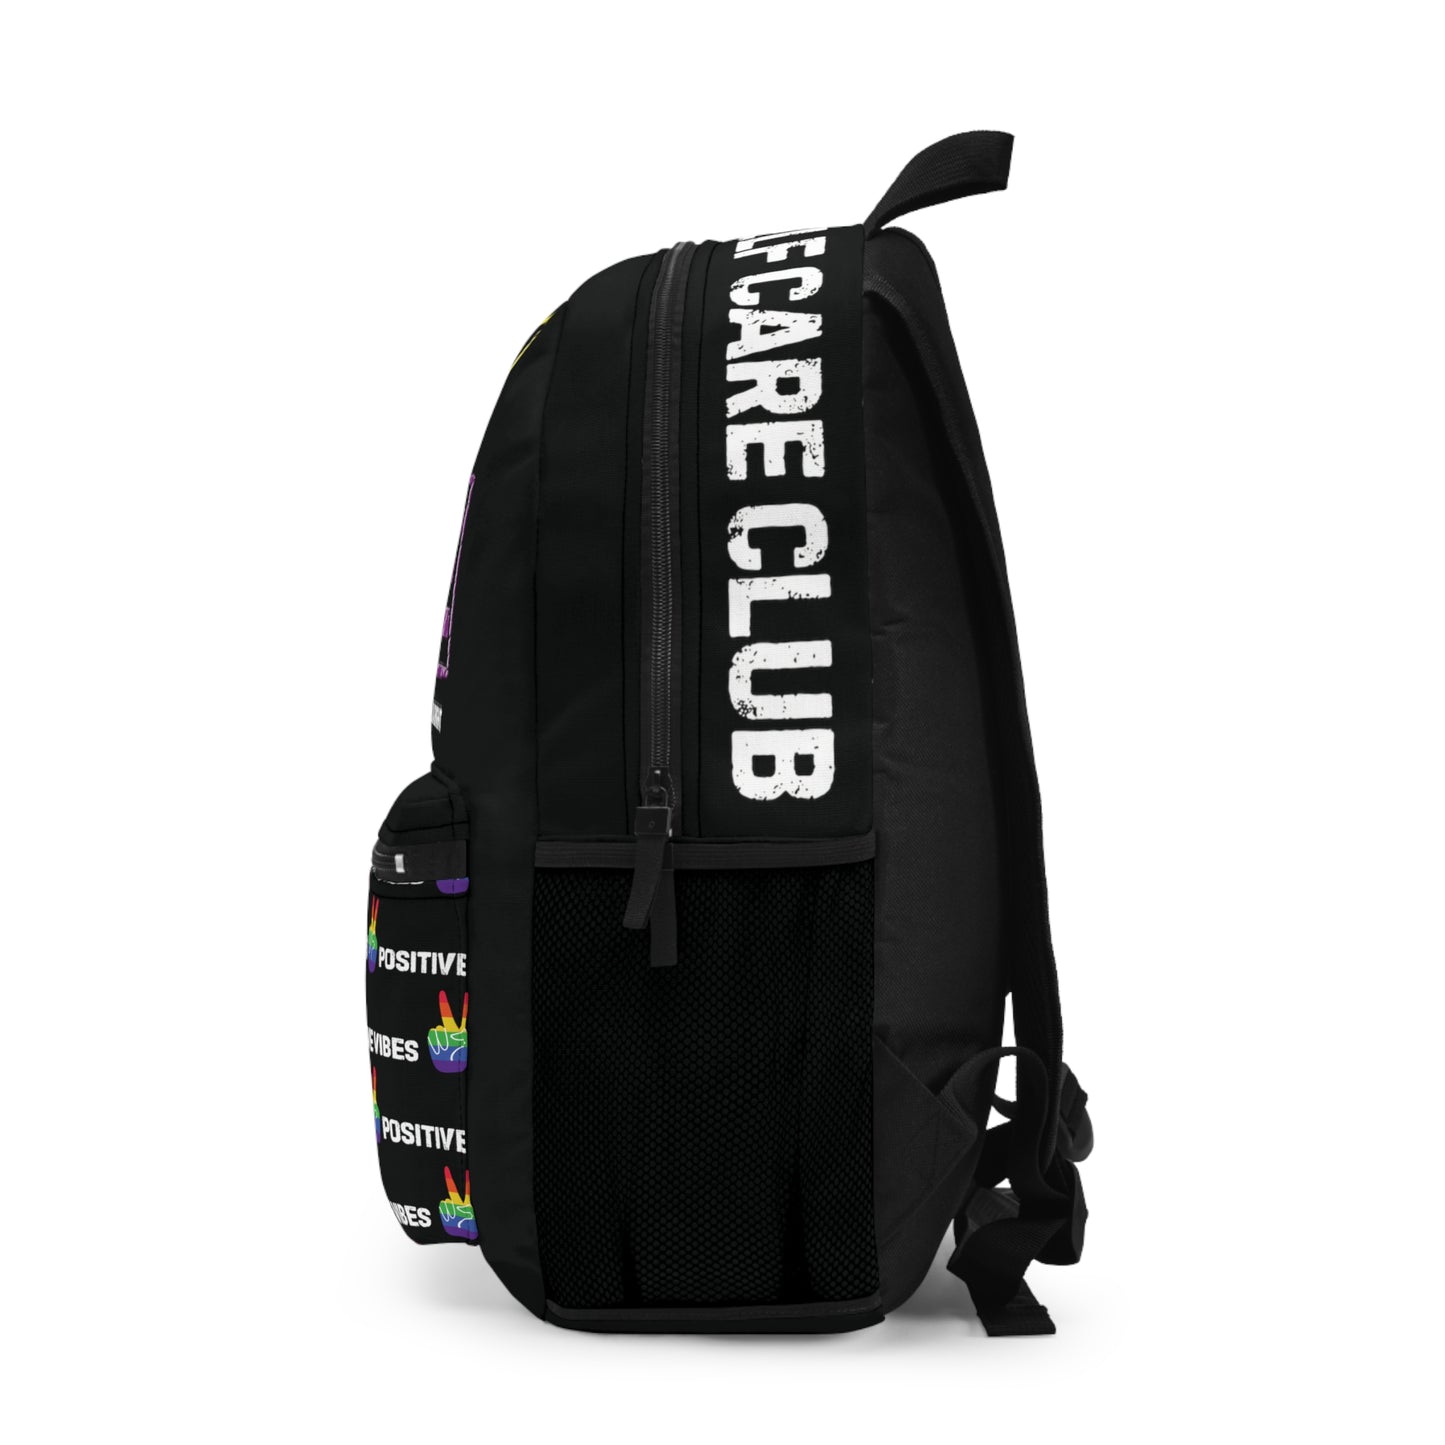 One Love (PRIDE) Backpack